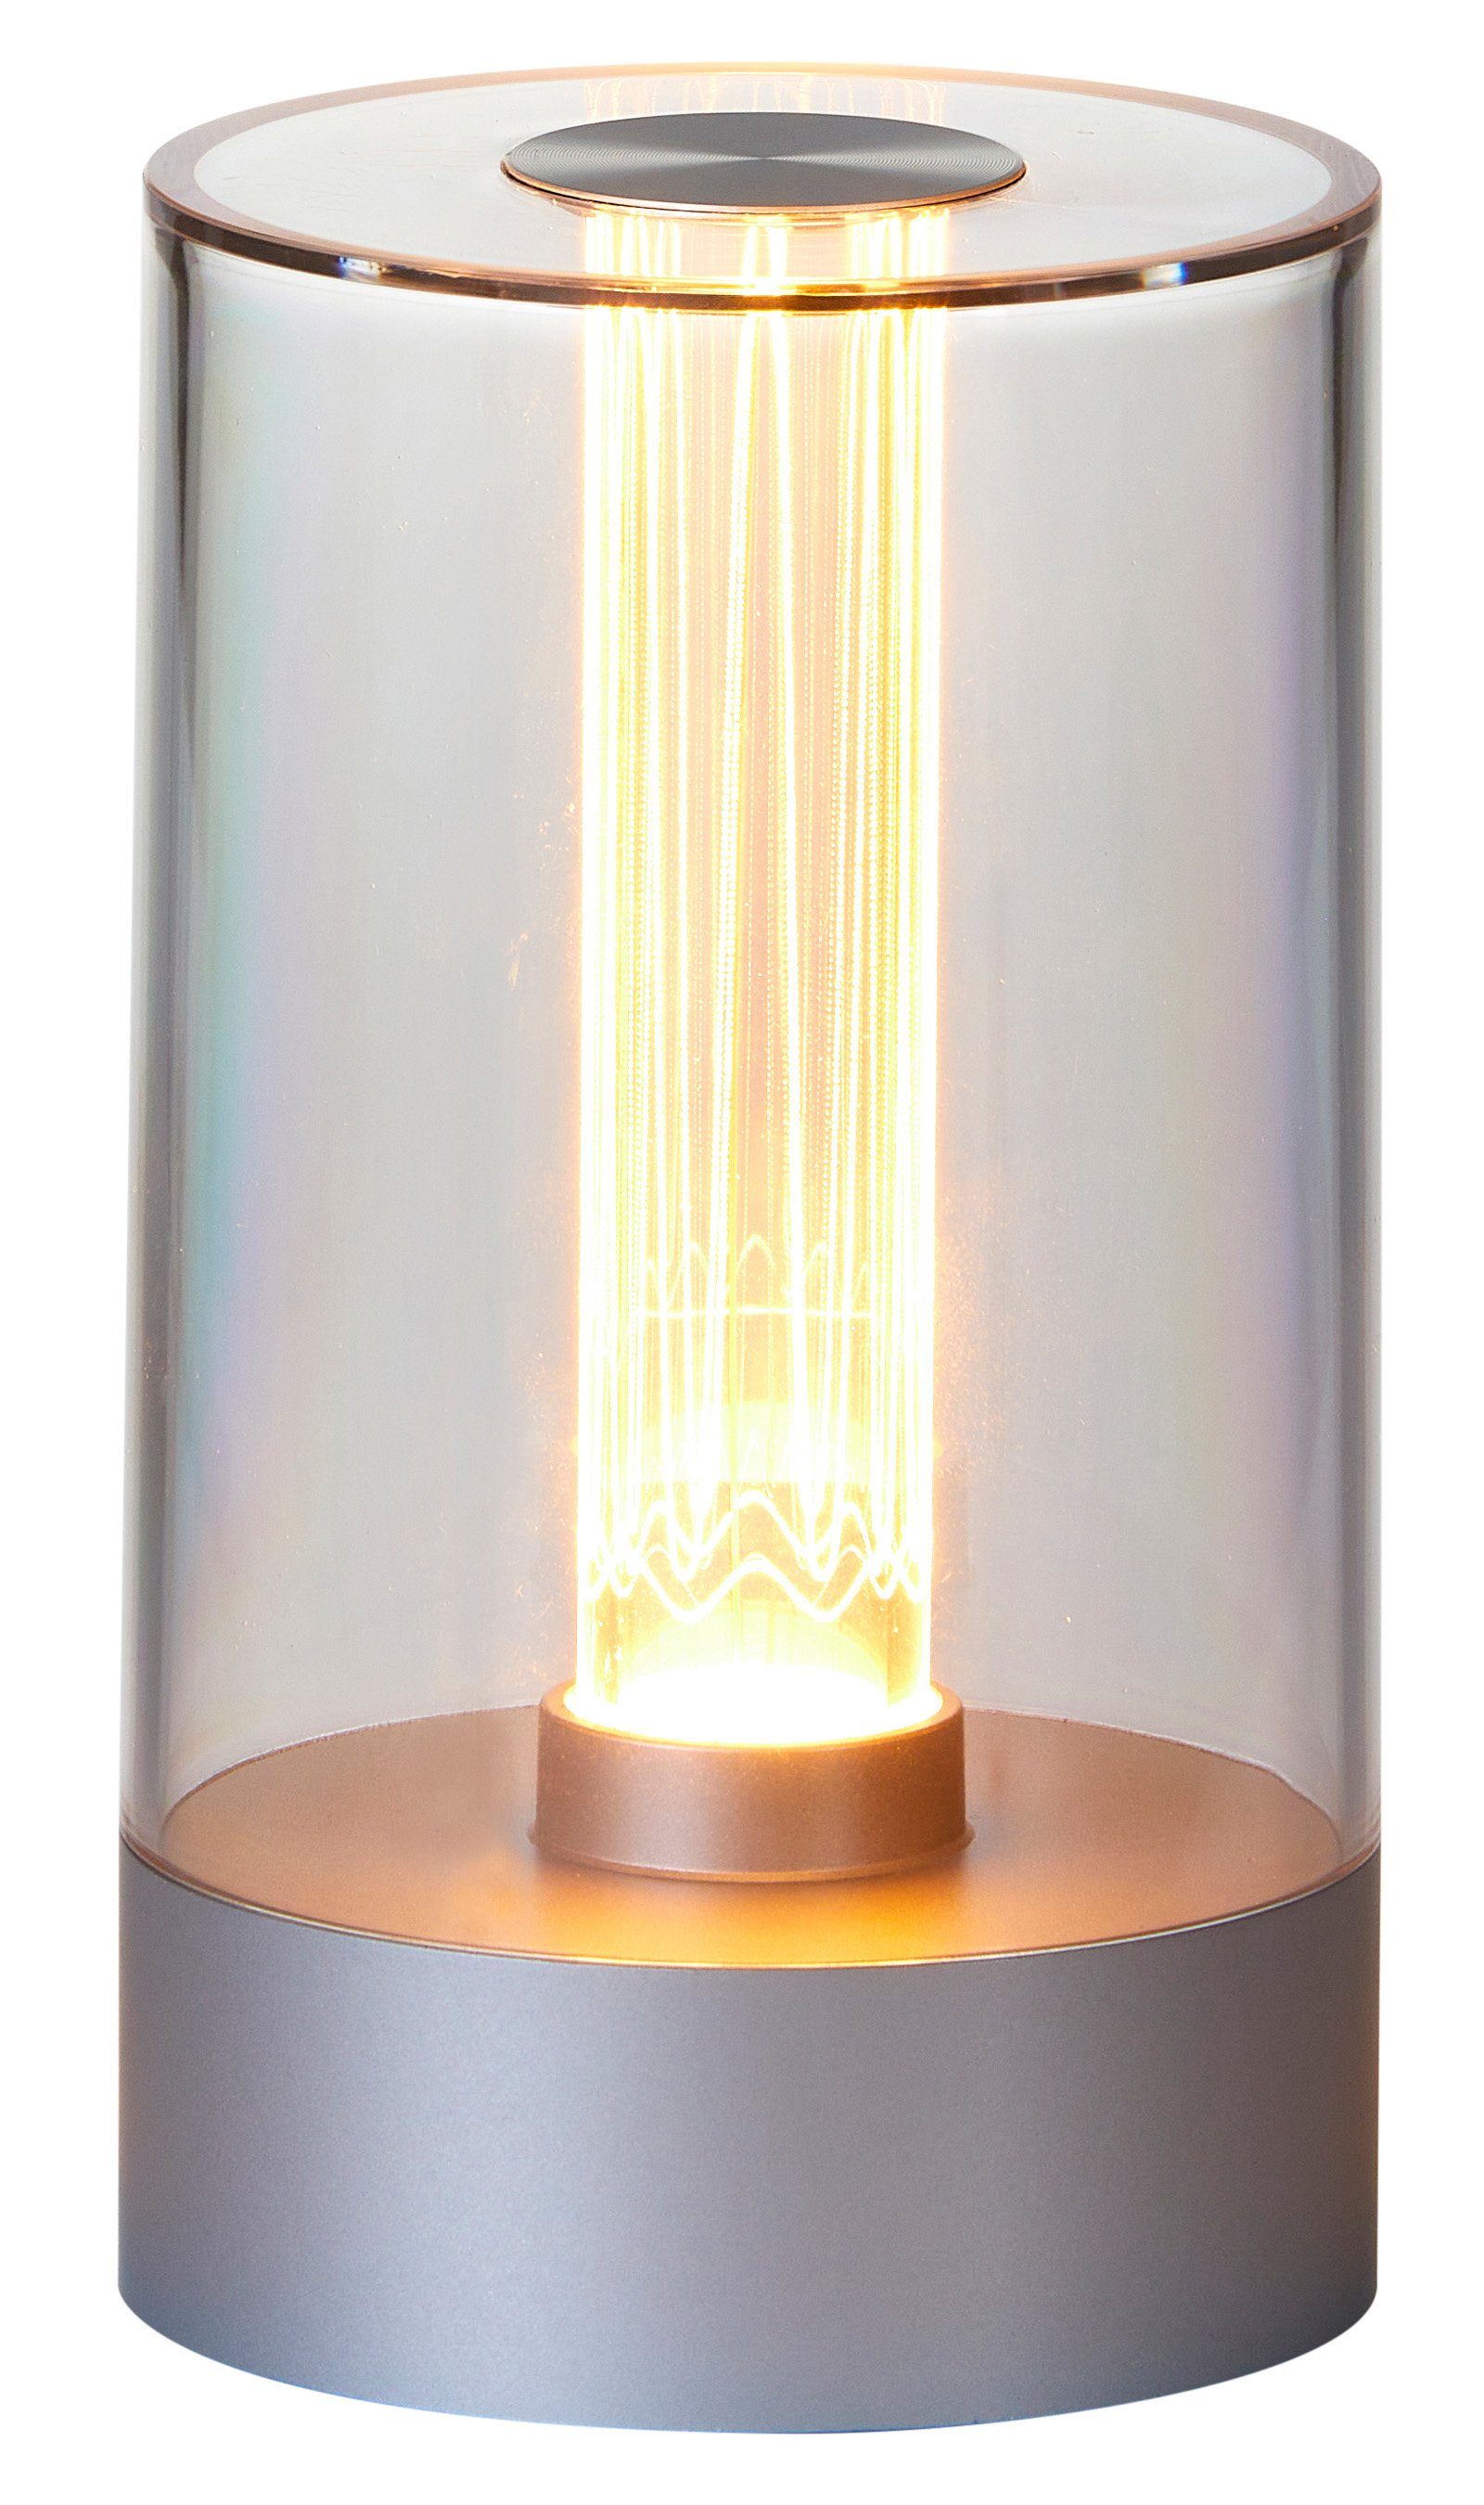 Northpoint Glühdraht Akku Nachttischlampe Design LED mit Tischleuchte aufladbarer Silber LED Tischlampe Akku